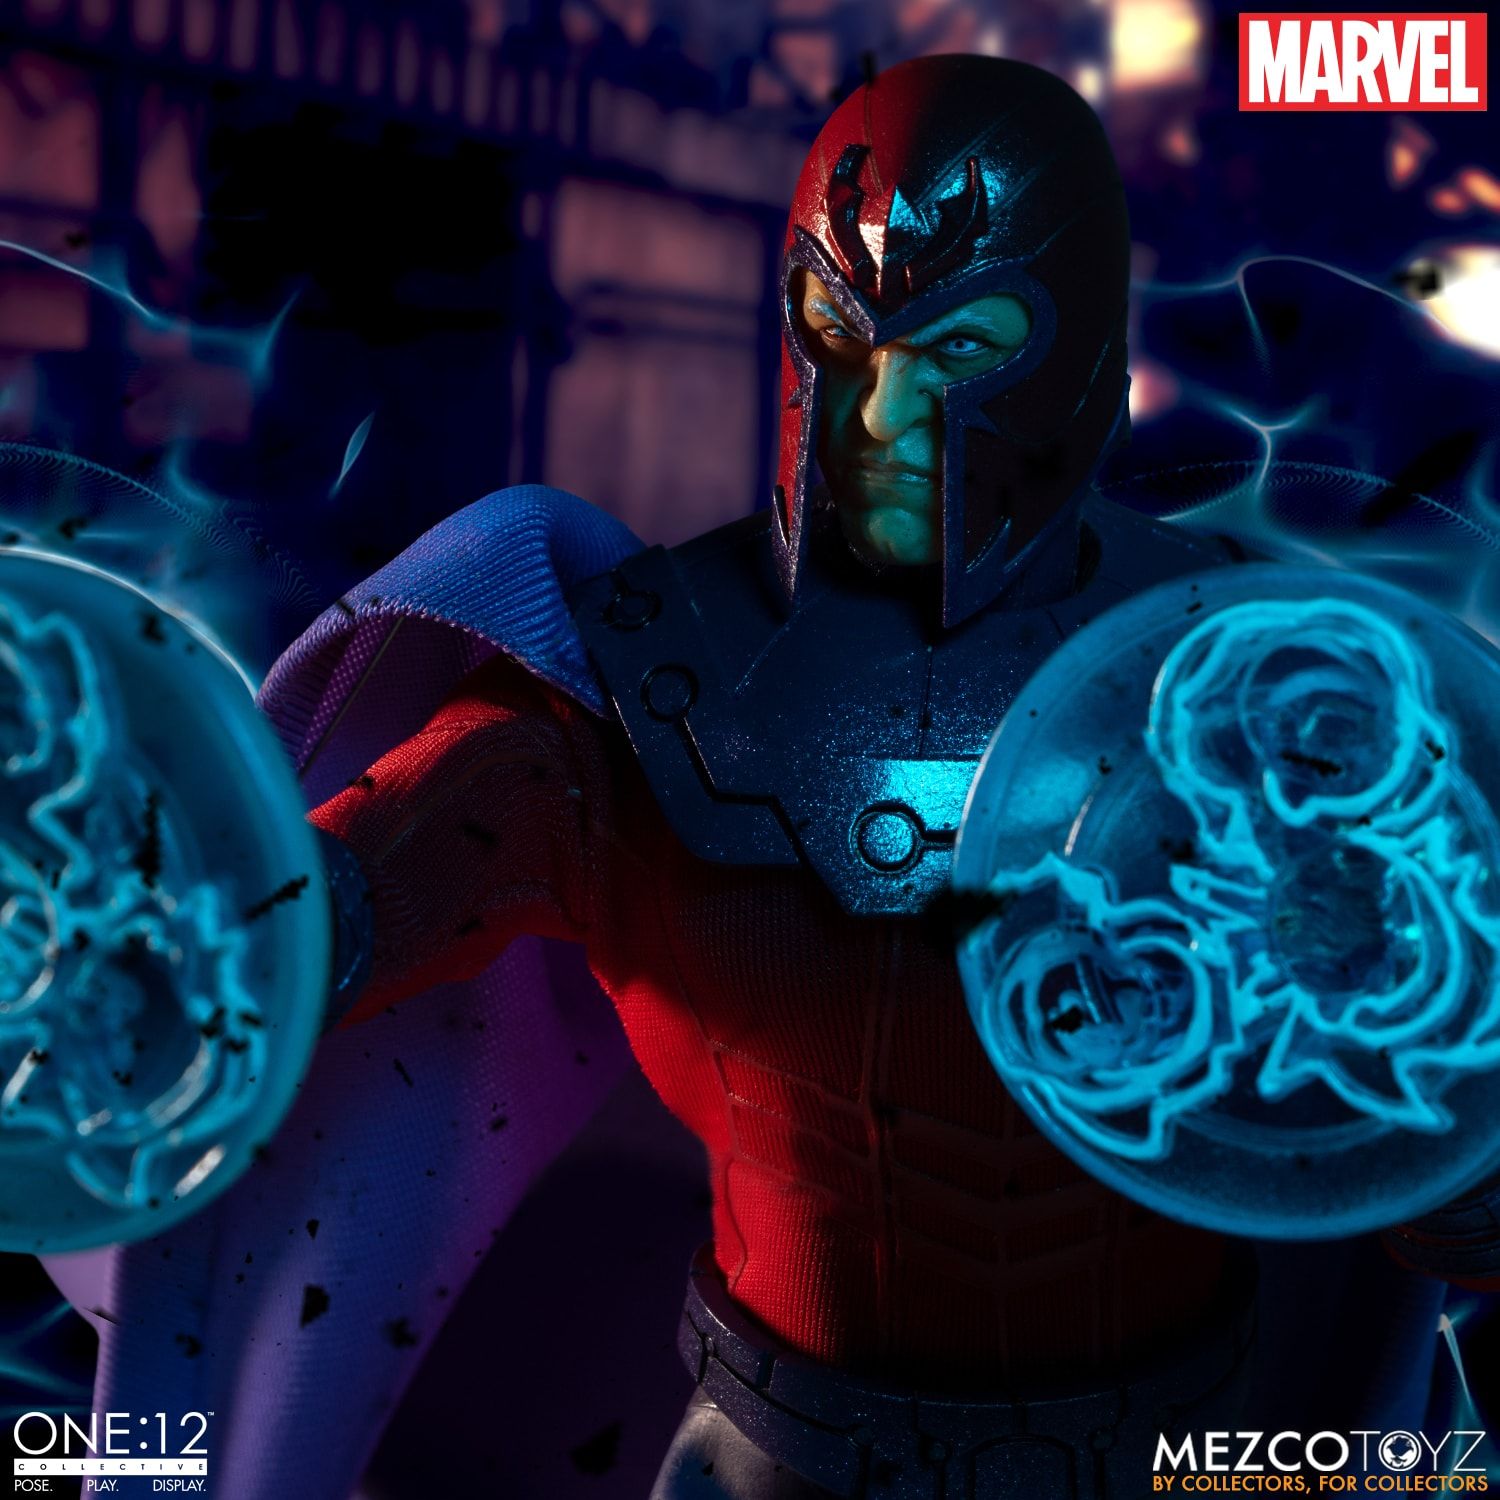 Mezco ONE:12 Collective Magneto Figure Photos & Order Info